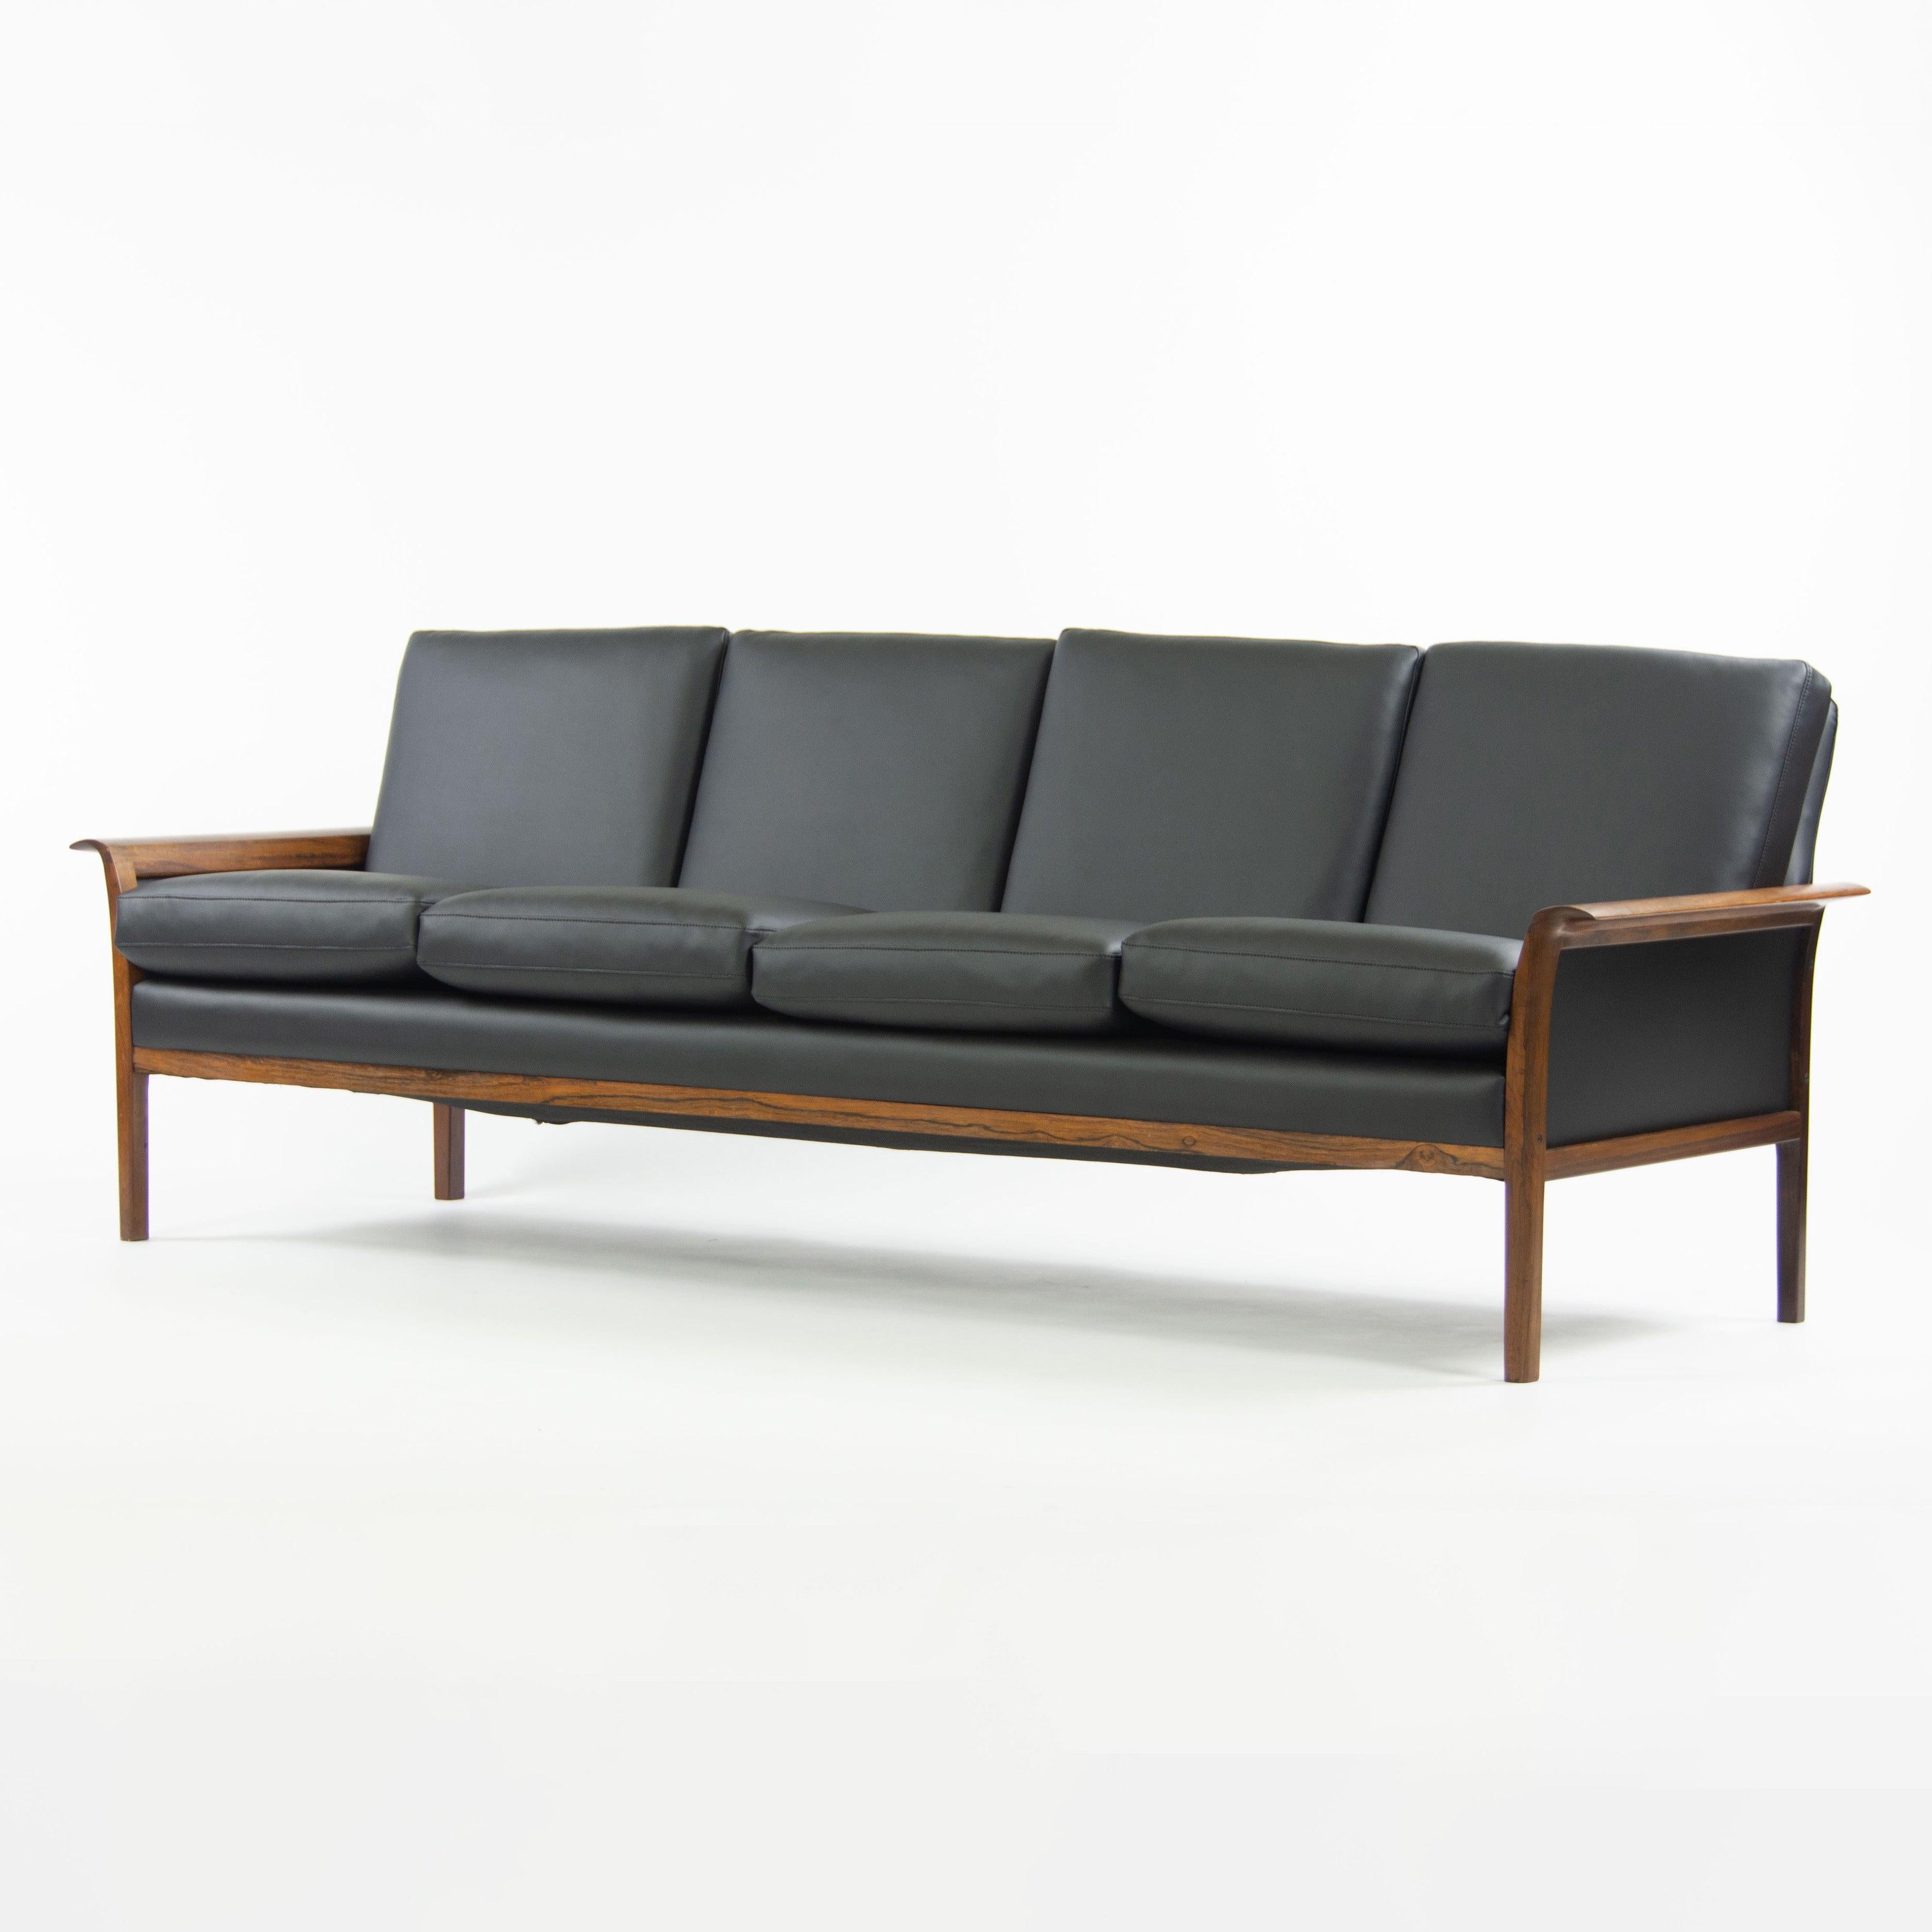 Zum Verkauf steht ein wunderschönes und authentisches Knut Saeter Palisander Sofa, hergestellt von Vatne Mobler. Dieses Exemplar wurde gerade frisch gepolstert und kostete weit über 2500 Dollar. Die Polsterung ist atemberaubend und bildet einen